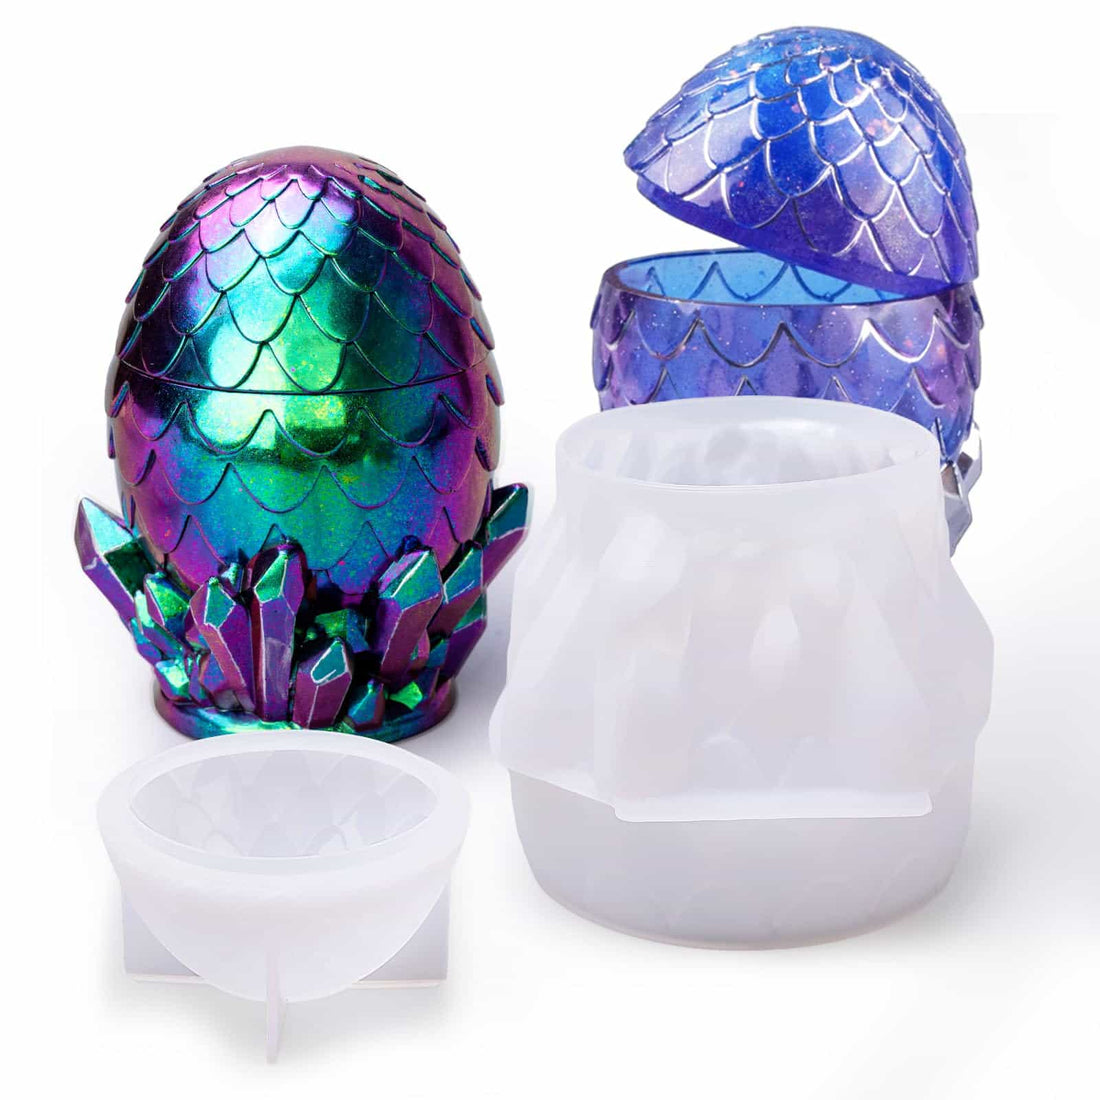 Dragon Egg Jar Molds with Lid